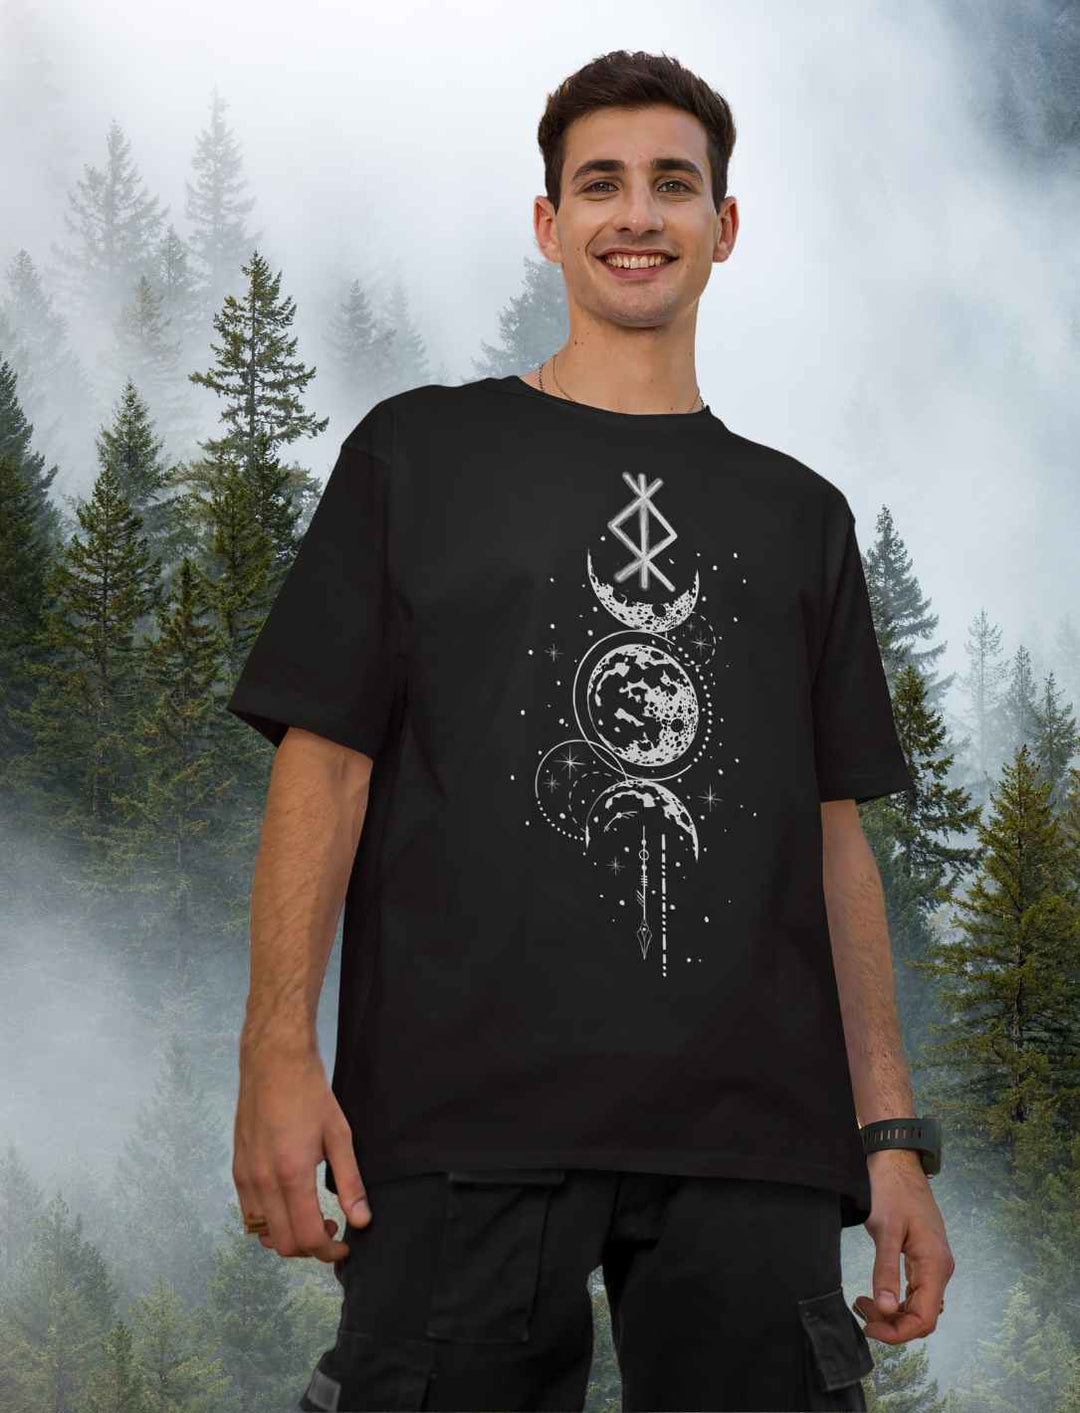 Oversized Shirt - Rune des Mondschein Wächters in Schwarz. Nordische Symbole und Mondphasen vereint.